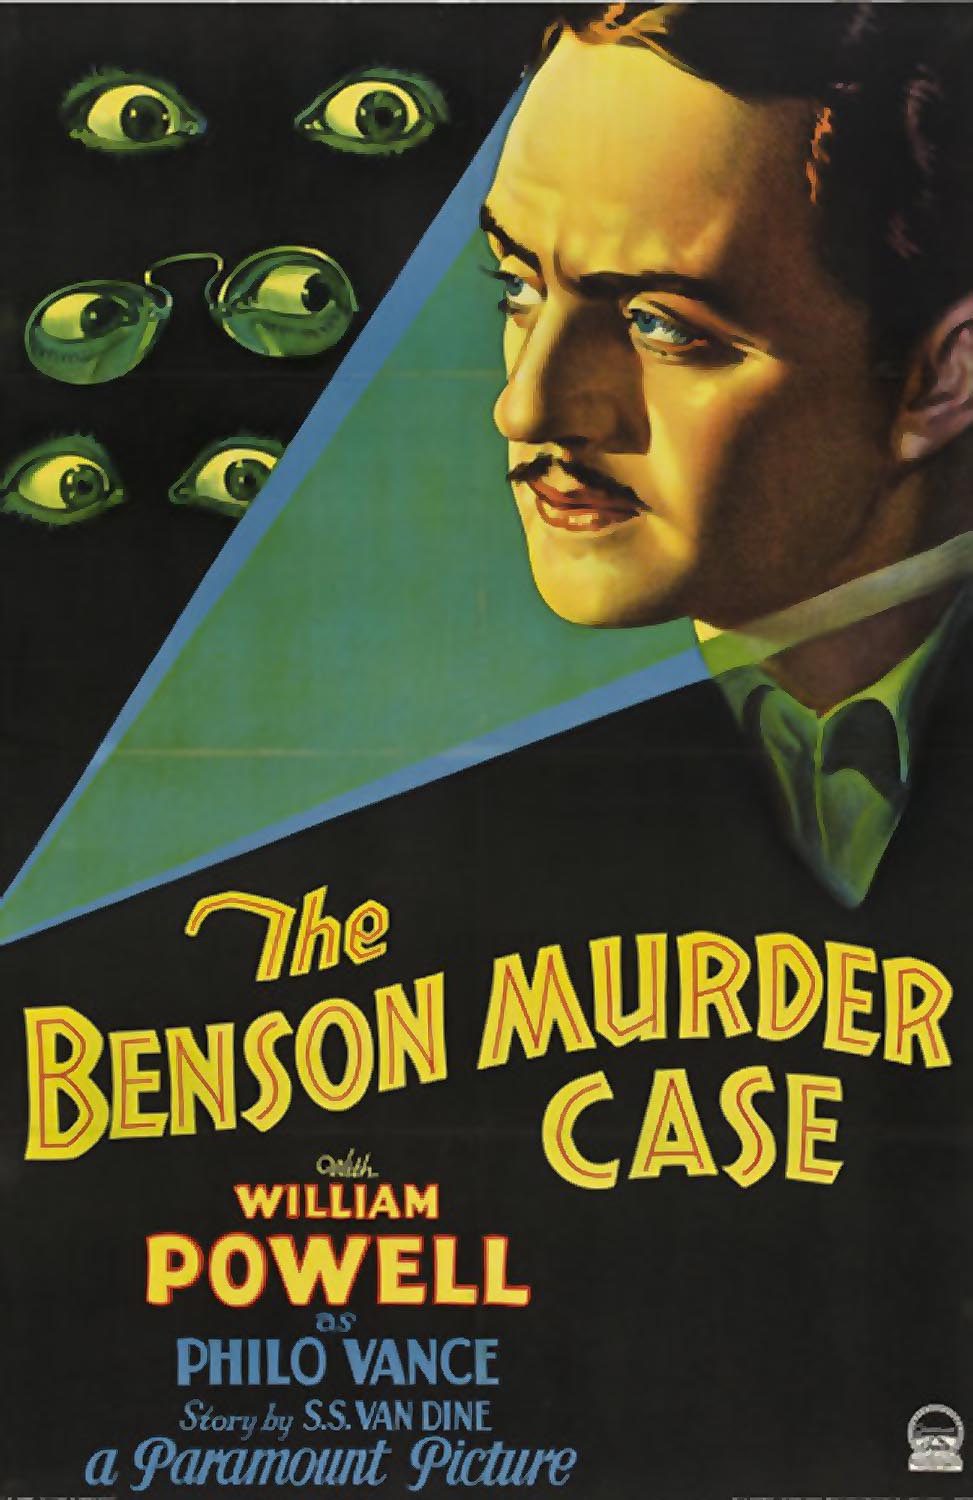 BENSON MURDER CASE